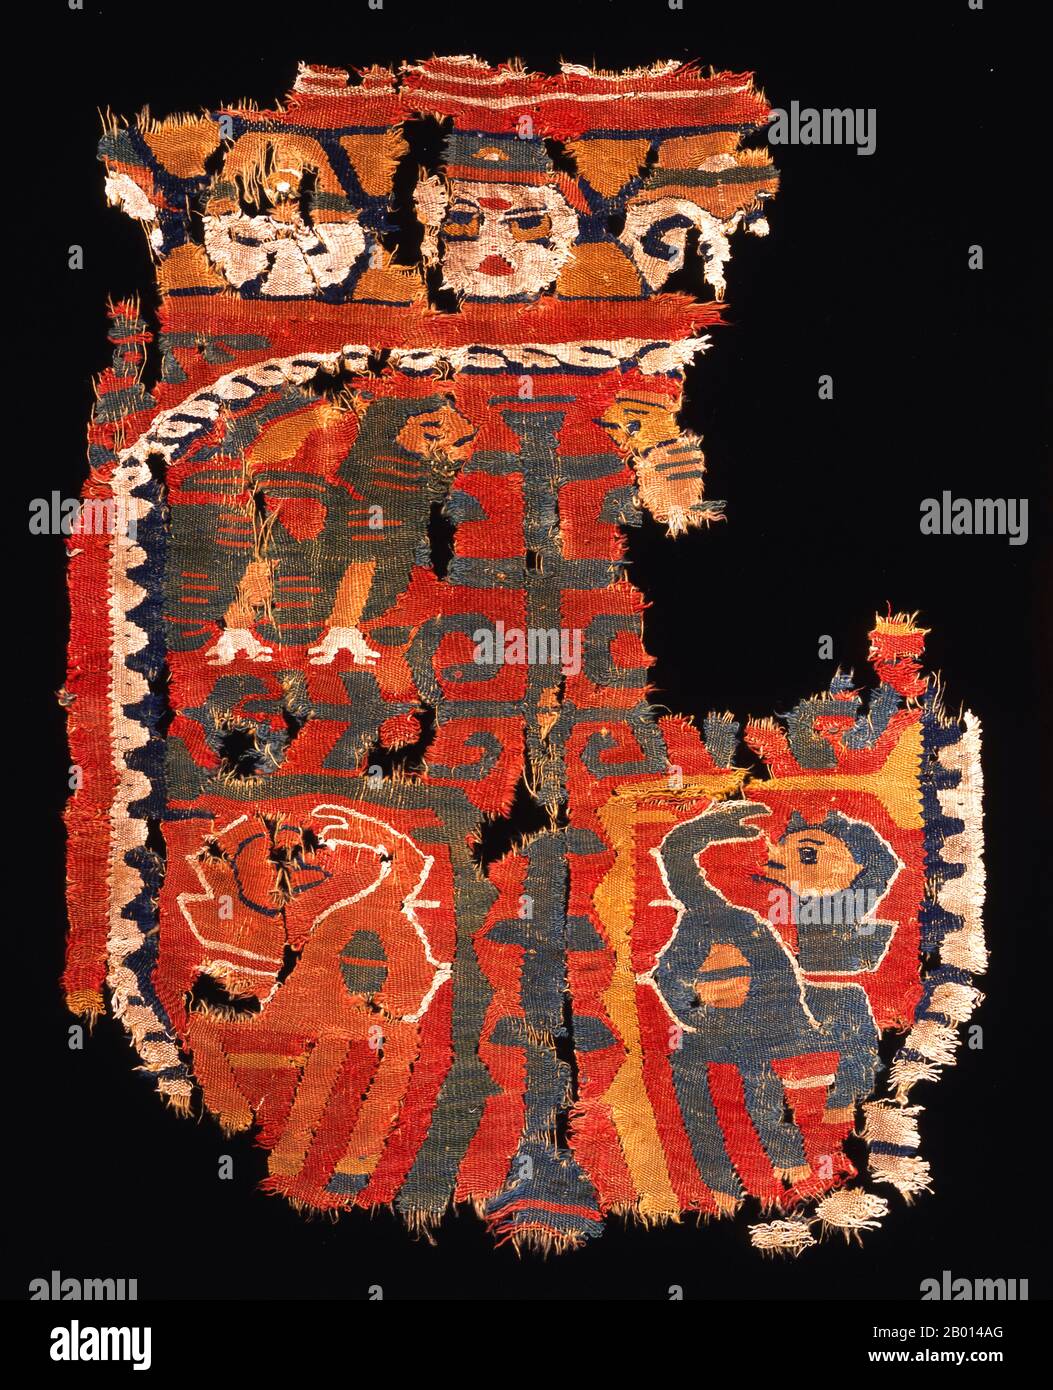 Ägypten: Dekoratives Wandteppichfragment aus Wolle und ungefärbter Wäsche, 9.-10. Jahrhundert. Dieser Wandteppich stammt wahrscheinlich aus der türkischen Tuluniden-Dynastie. Die Entwürfe spiegeln sowohl die lokale koptische Tradition als auch feinere Seidenstoffe der Art wider, die für die byzantinischen und sasanischen Gerichte bestimmt ist. Es zeigt einen stilisierten Baum des Lebens, umgeben von Sphinxen und Löwen, eingerahmt von einem Medaillon. Stockfoto